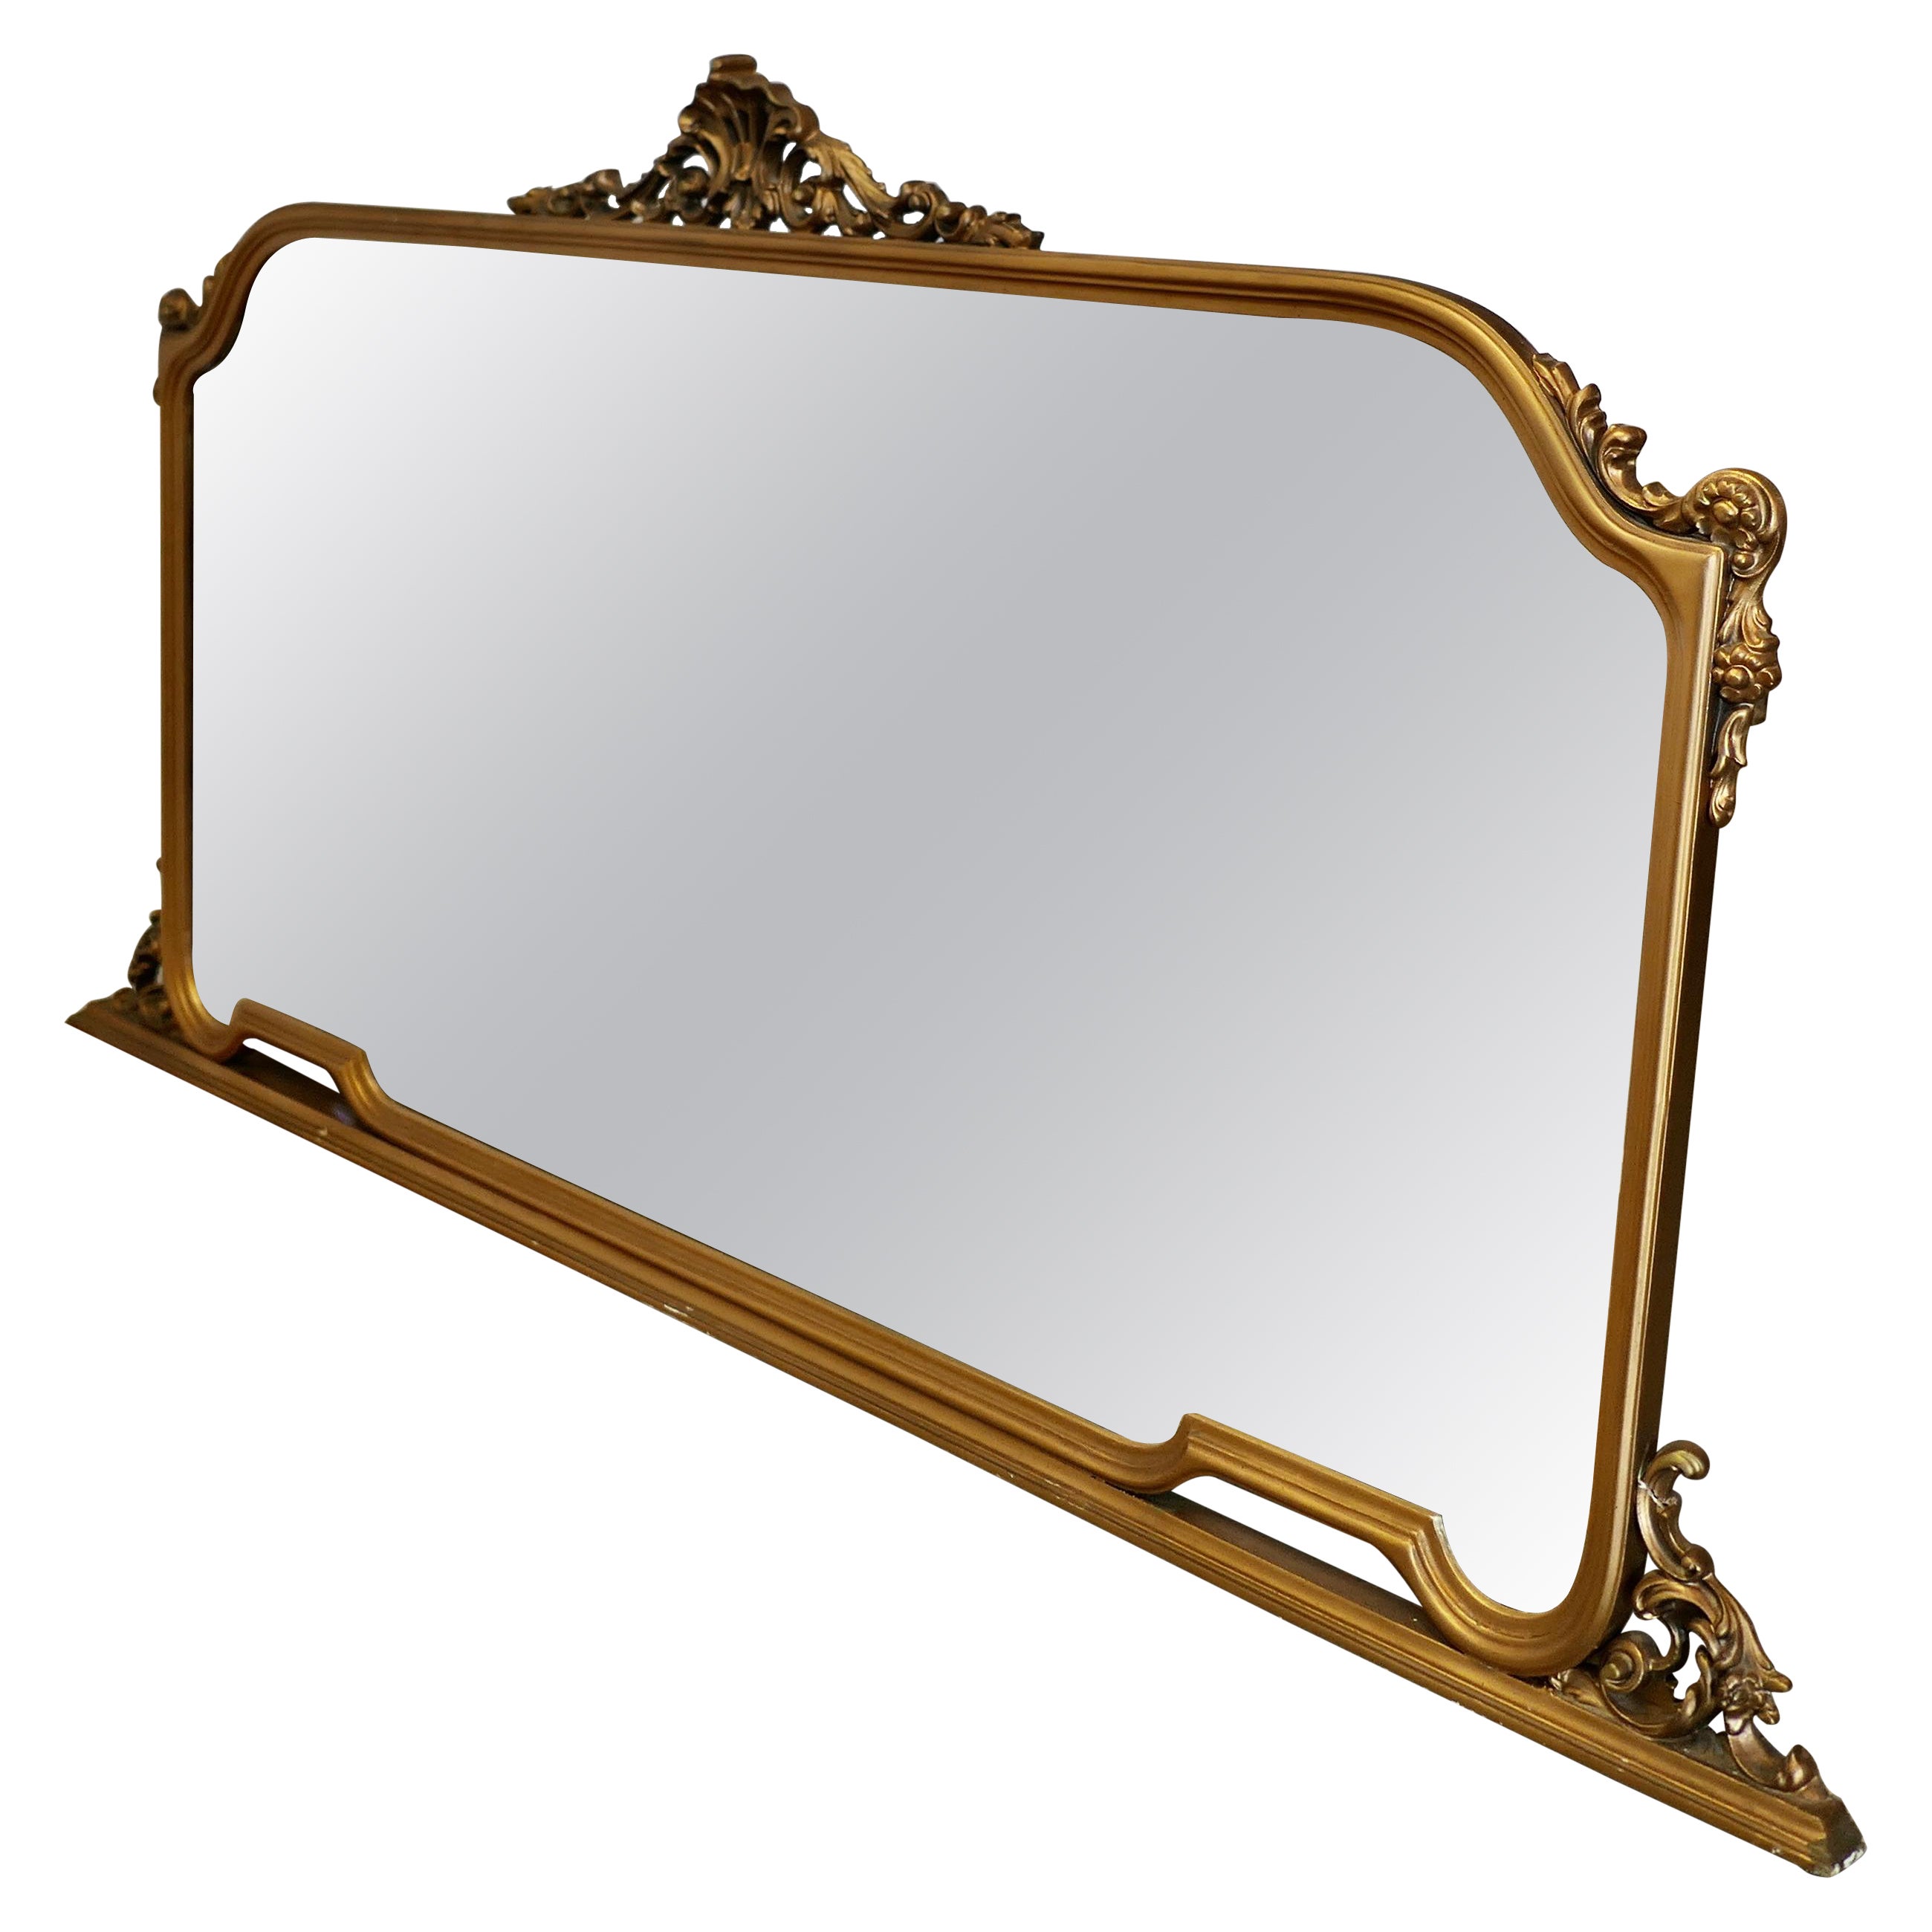 Ein großer vergoldeter Mantelspiegel    Dieser Spiegel hat einen schönen Goldrahmen  